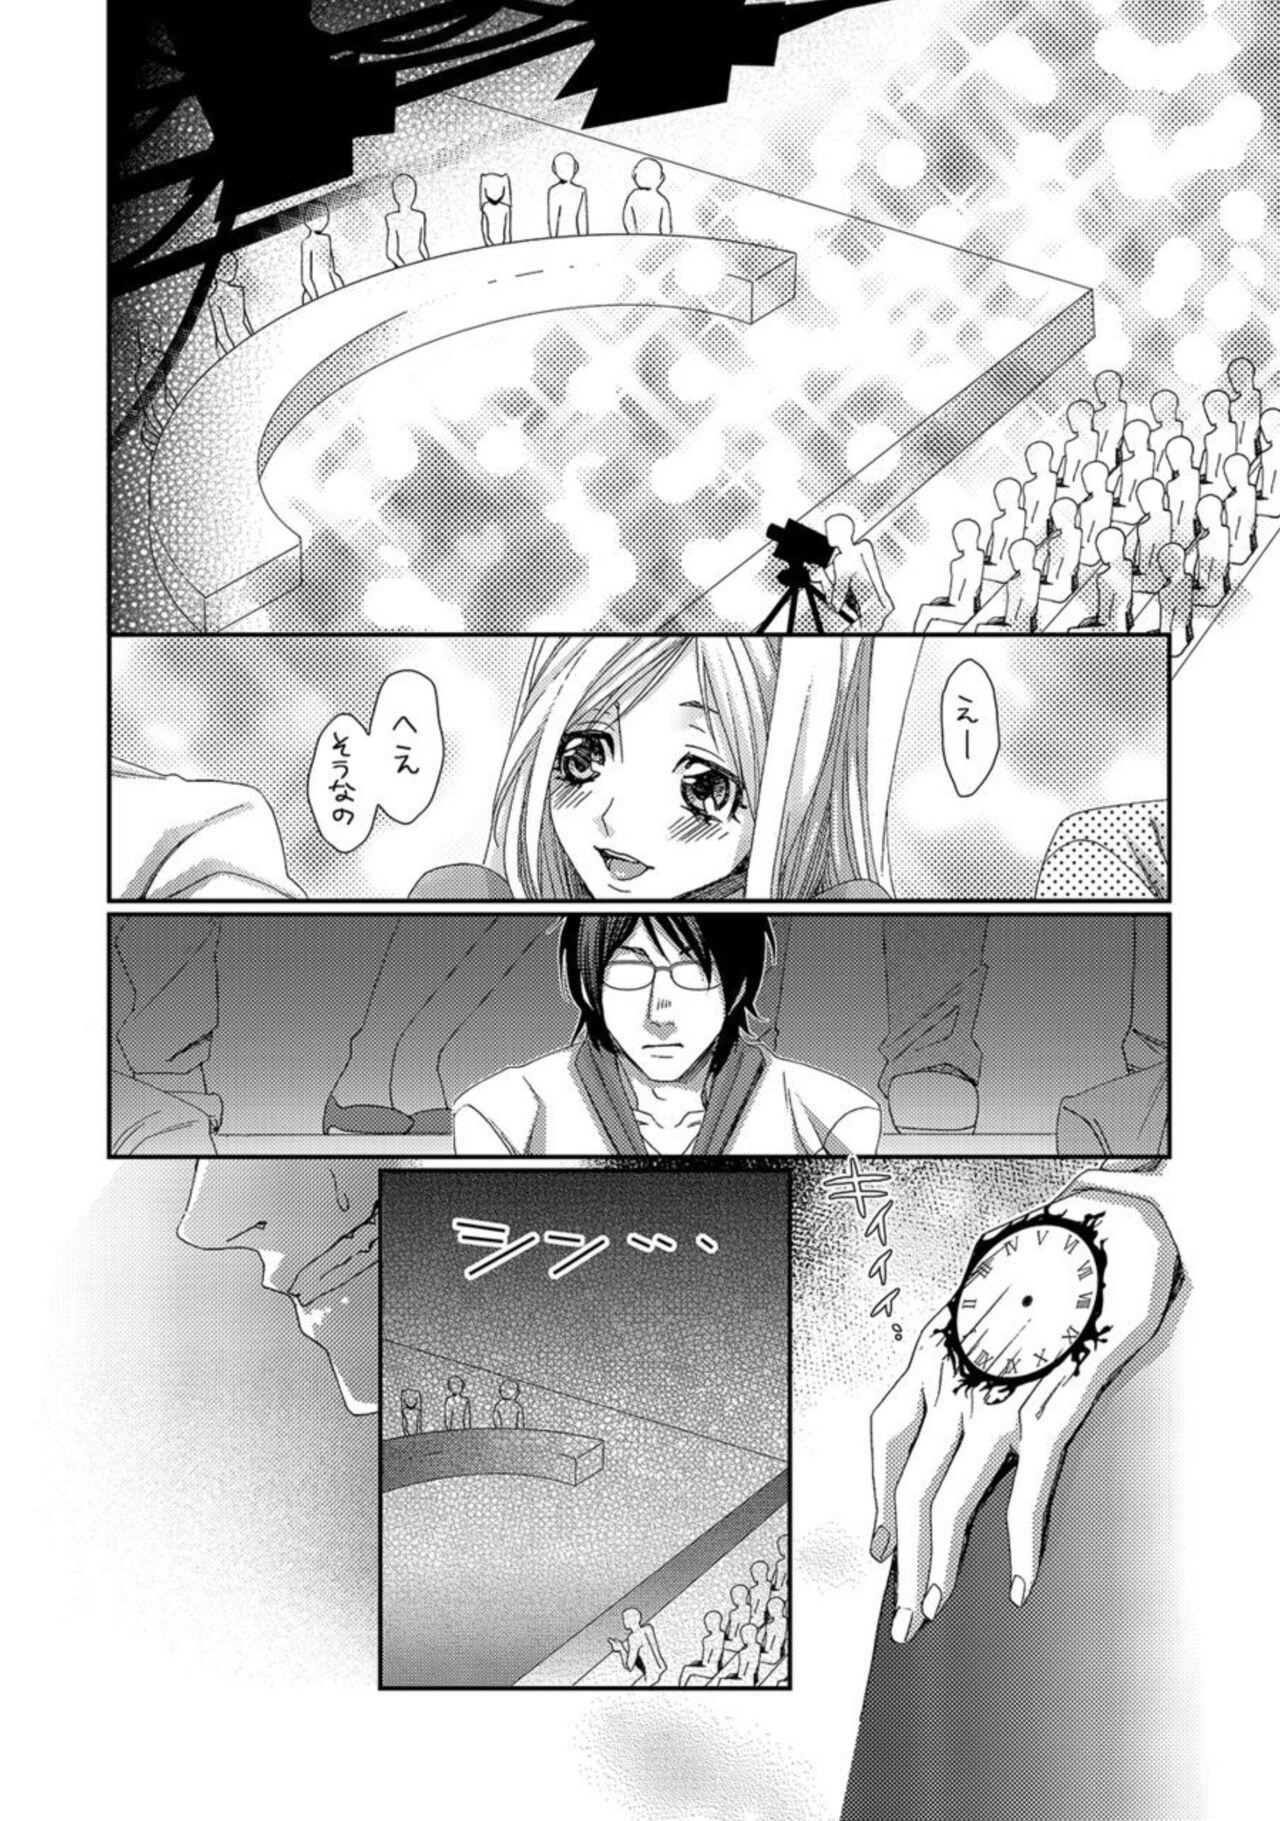 Rabo Jikan o Ayatsuri Mukyoka Tanetsuke - Shojo kara Ninshin made Mugen Loop Vol. 2 Gets - Page 6